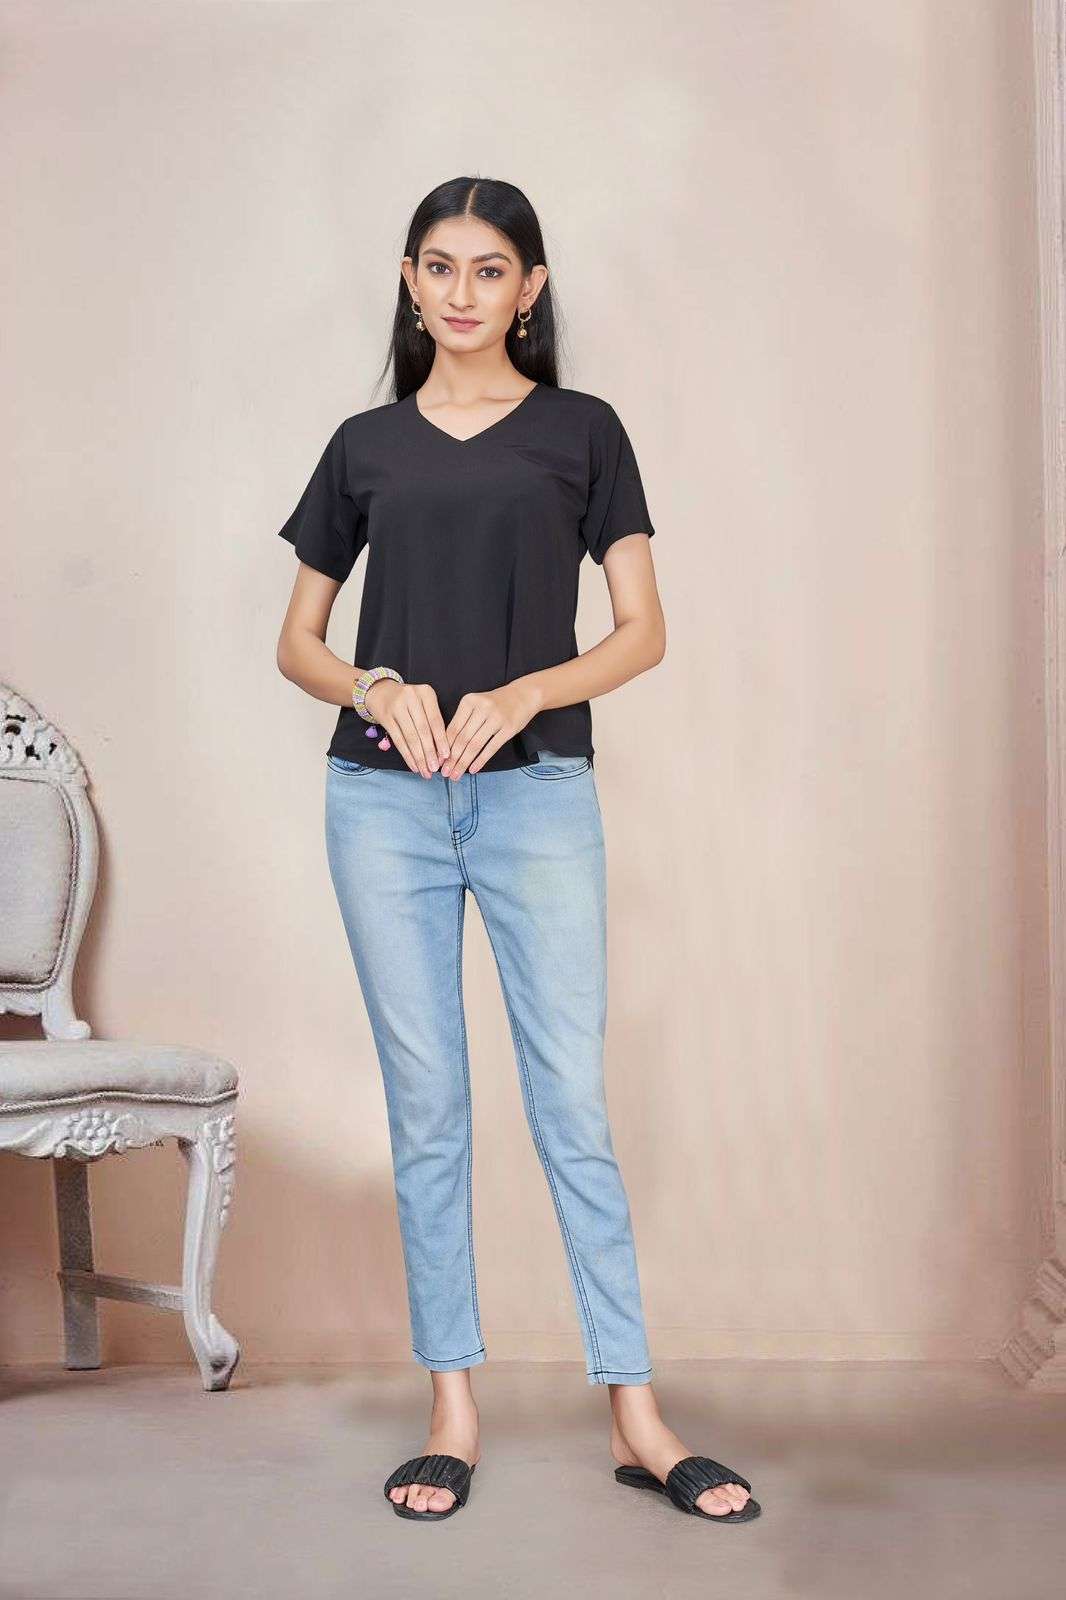 john 5010 colour series pratham fashion latest fancy trendy jeans top wholesaler surat gujarat